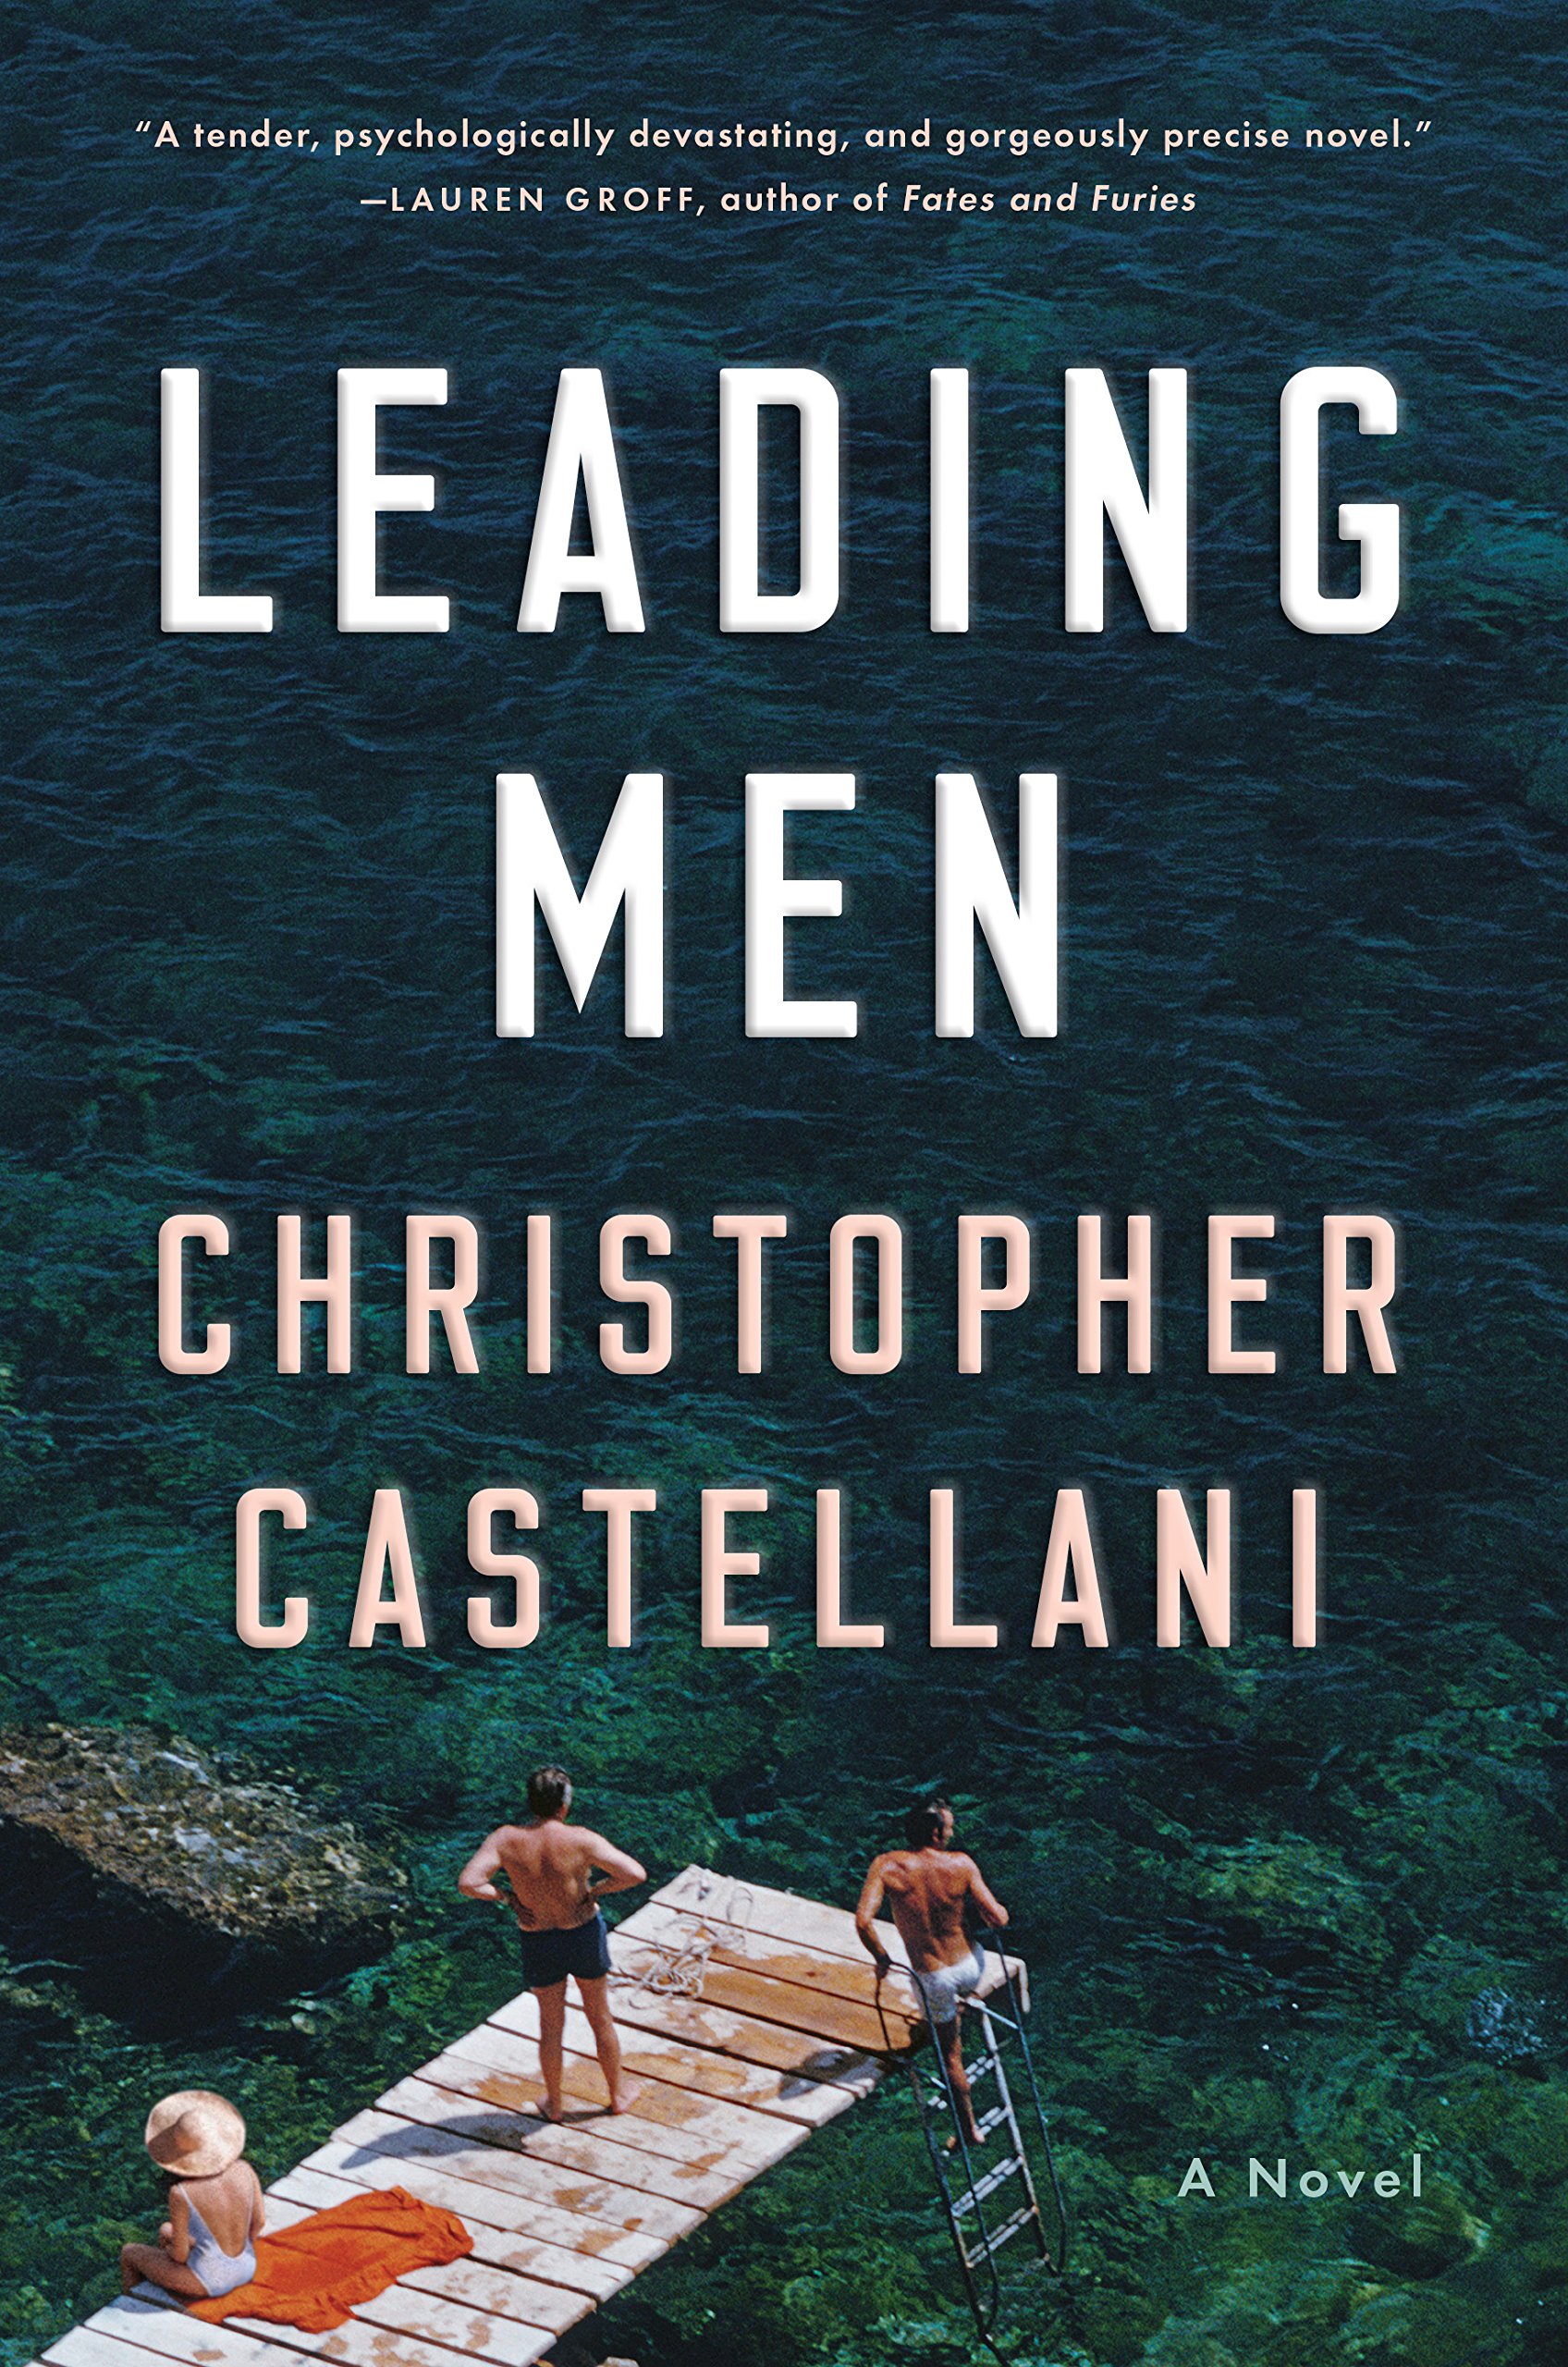 Leading men : a novel